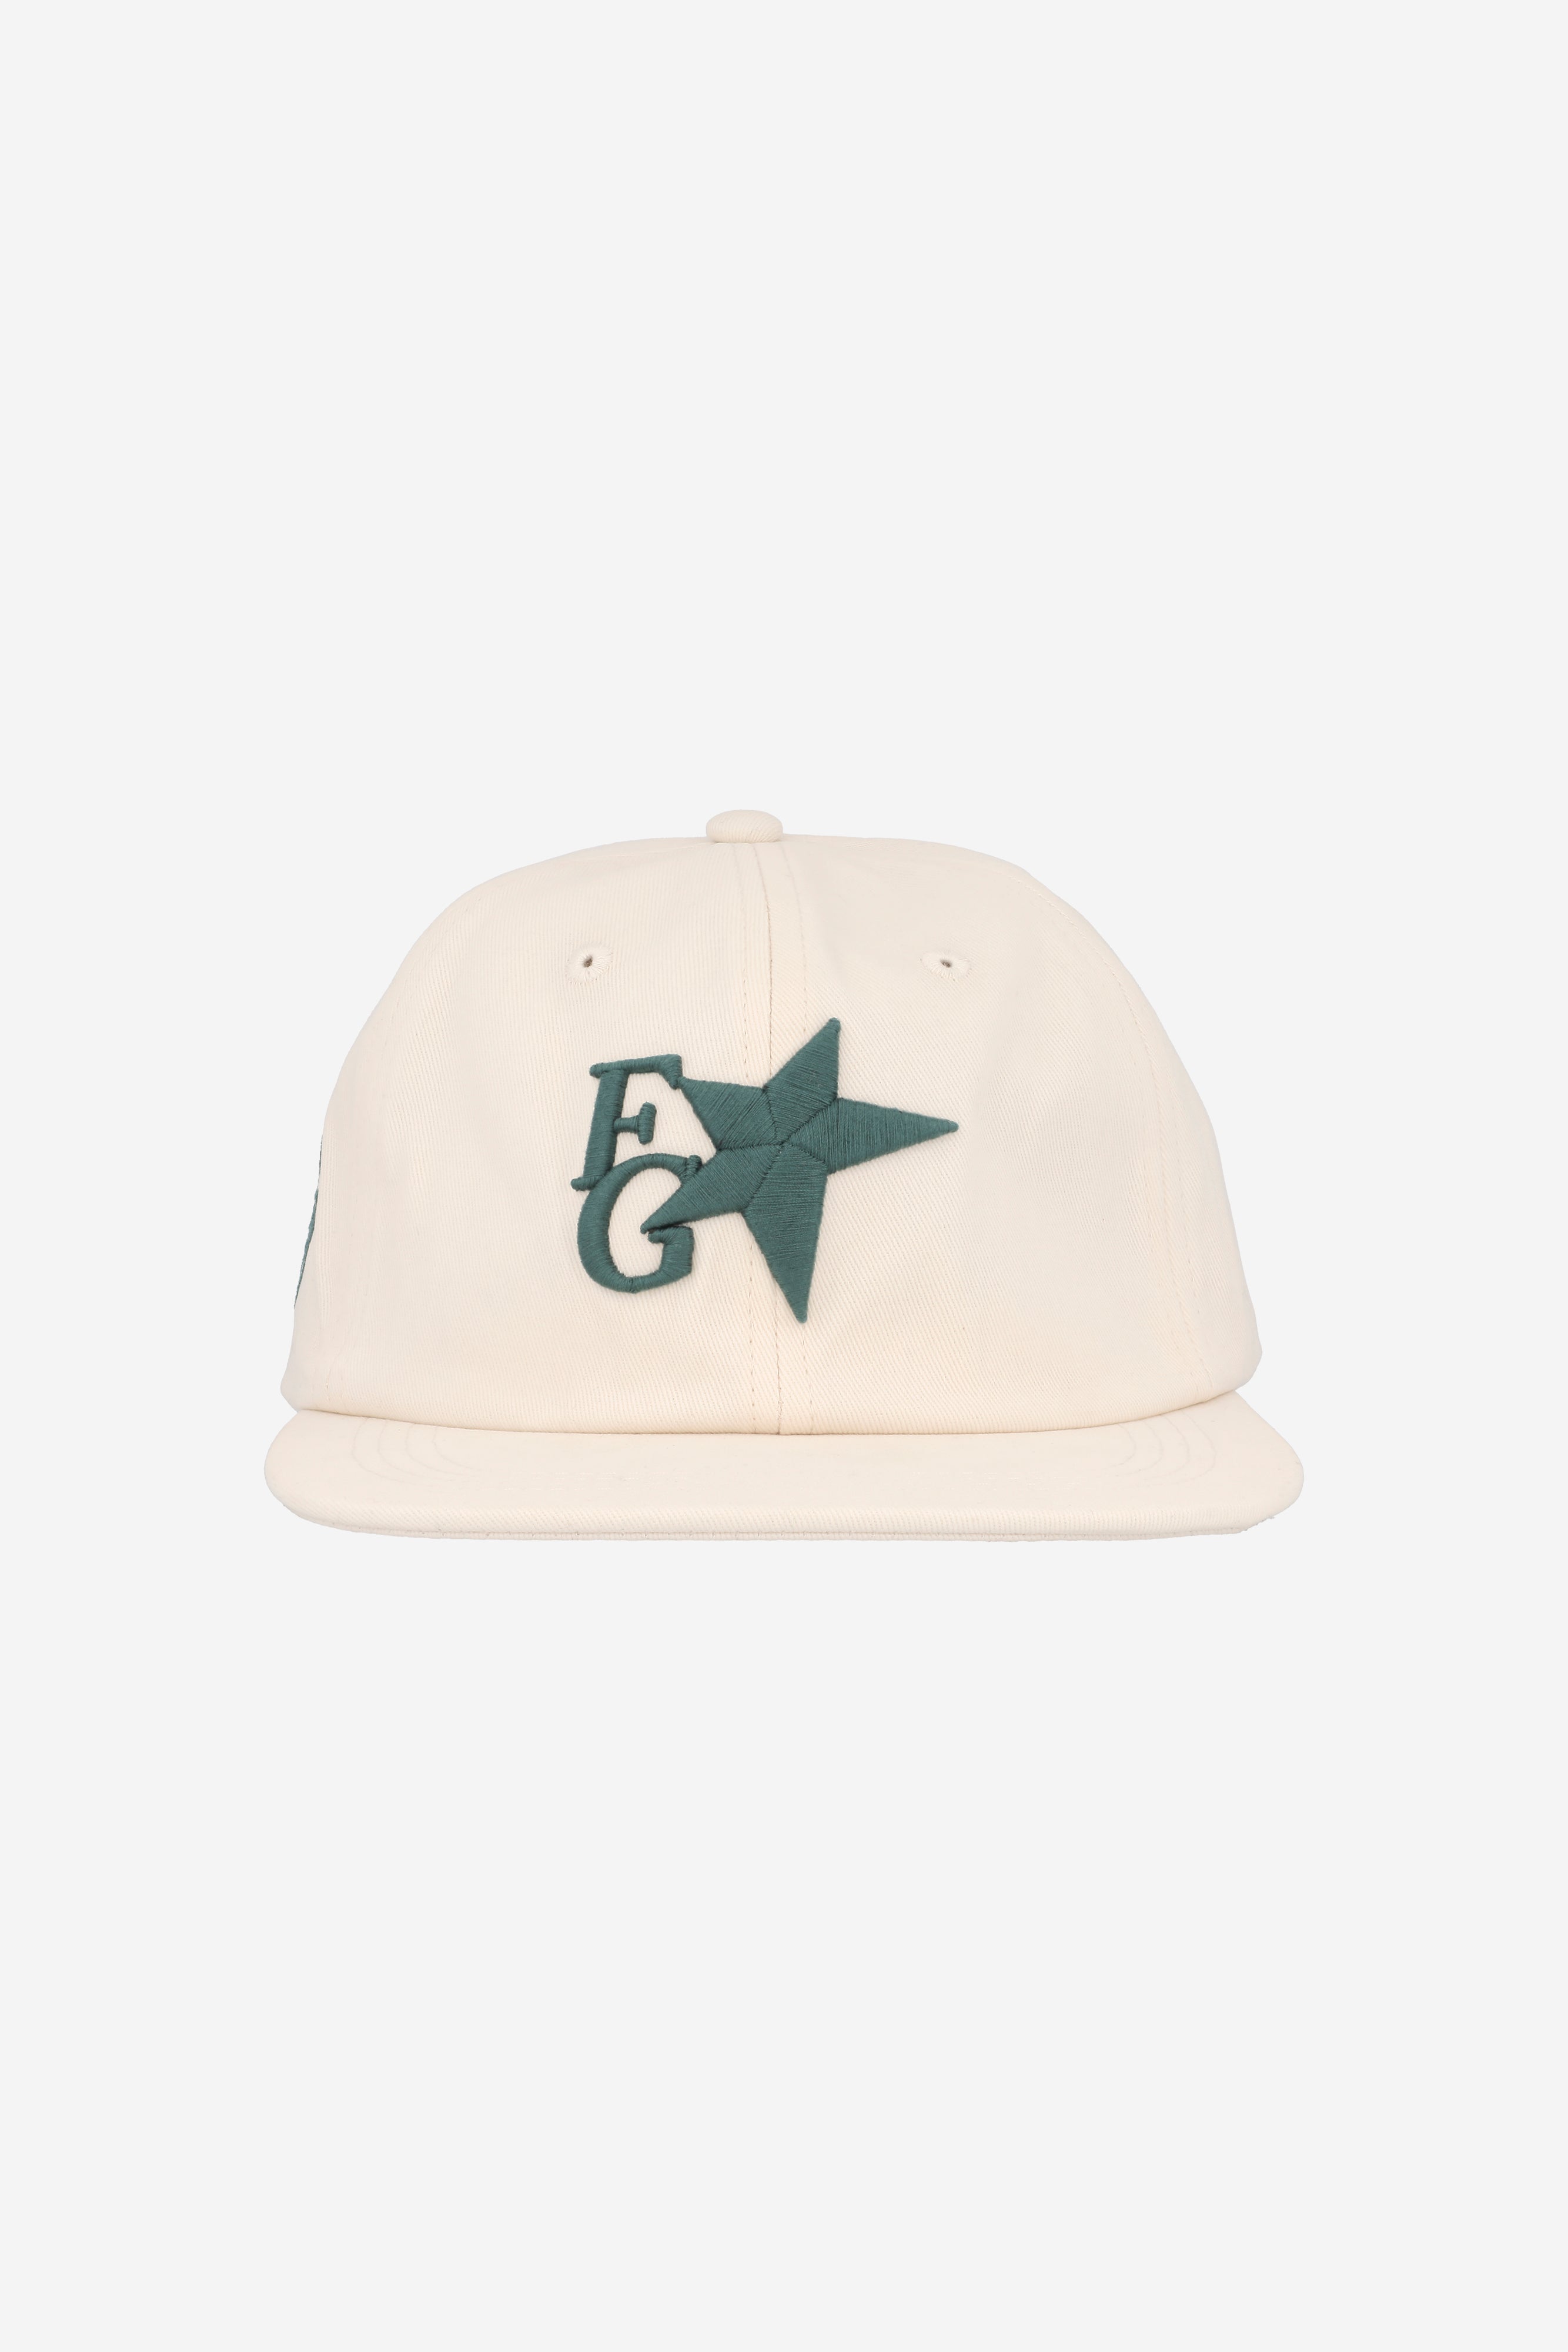 STAR CAP CREAM